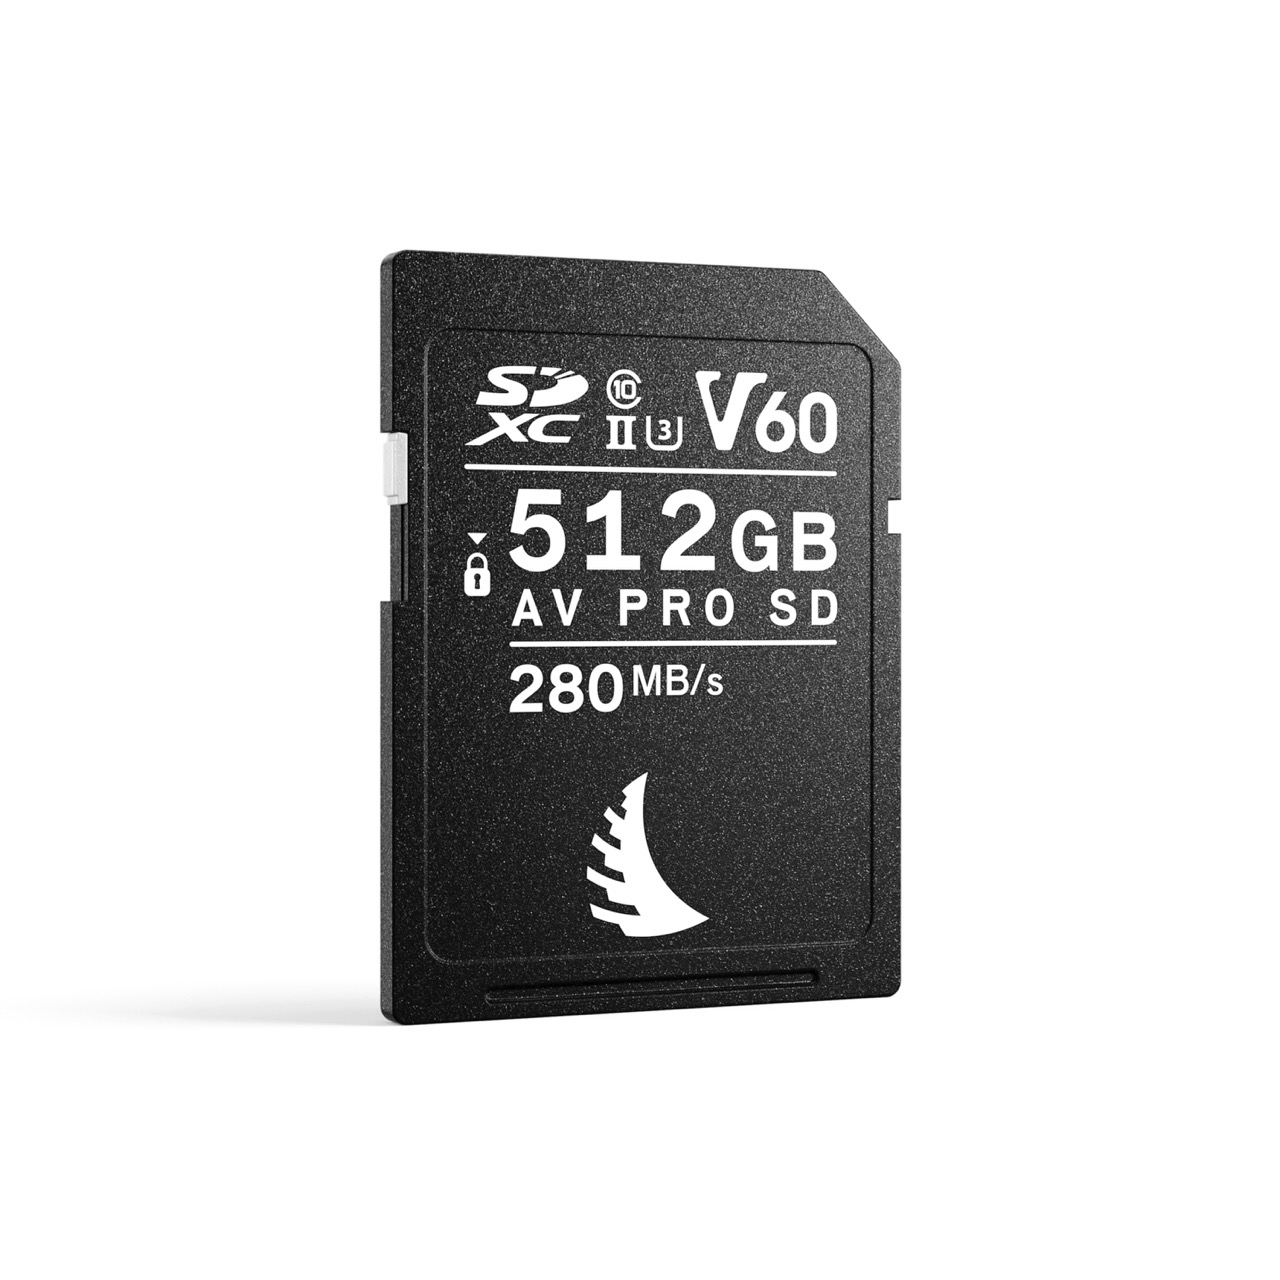 Angelbird AV PRO SD V60 MK2 512GB Speicherkarte, Frontal schräg